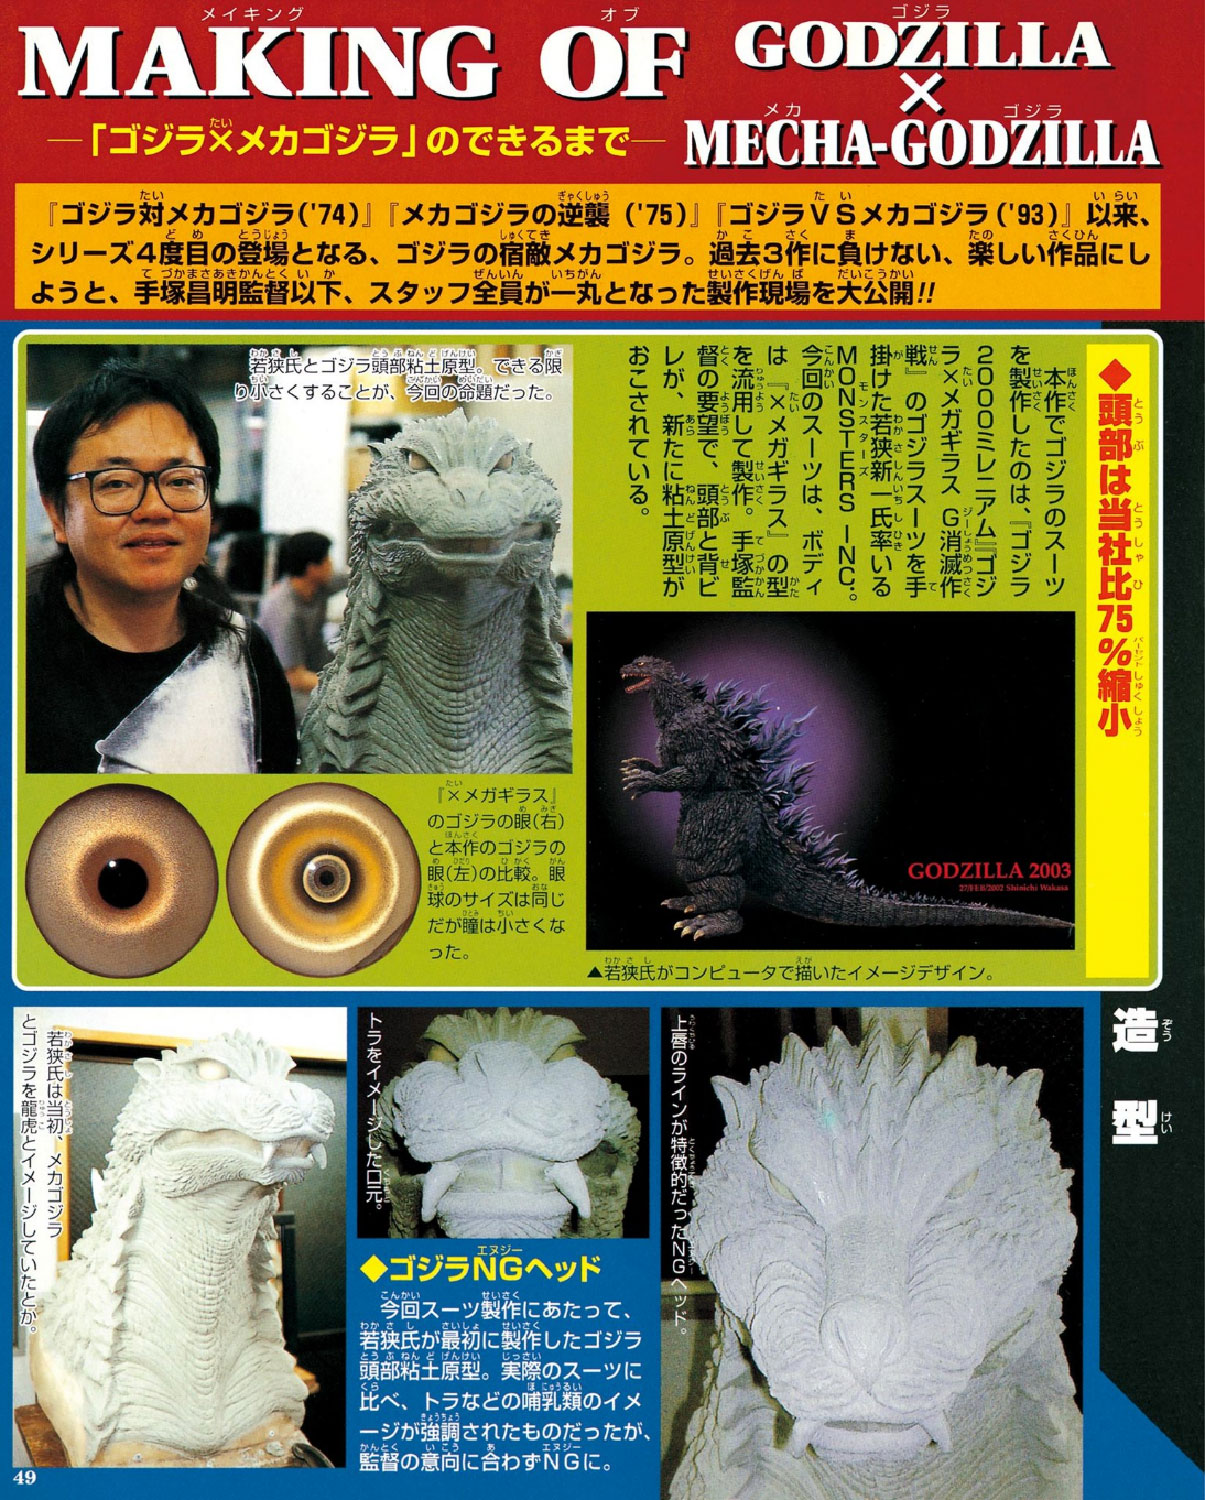 Making of Godzilla X Mecha-Godzilla – MyKaiju®